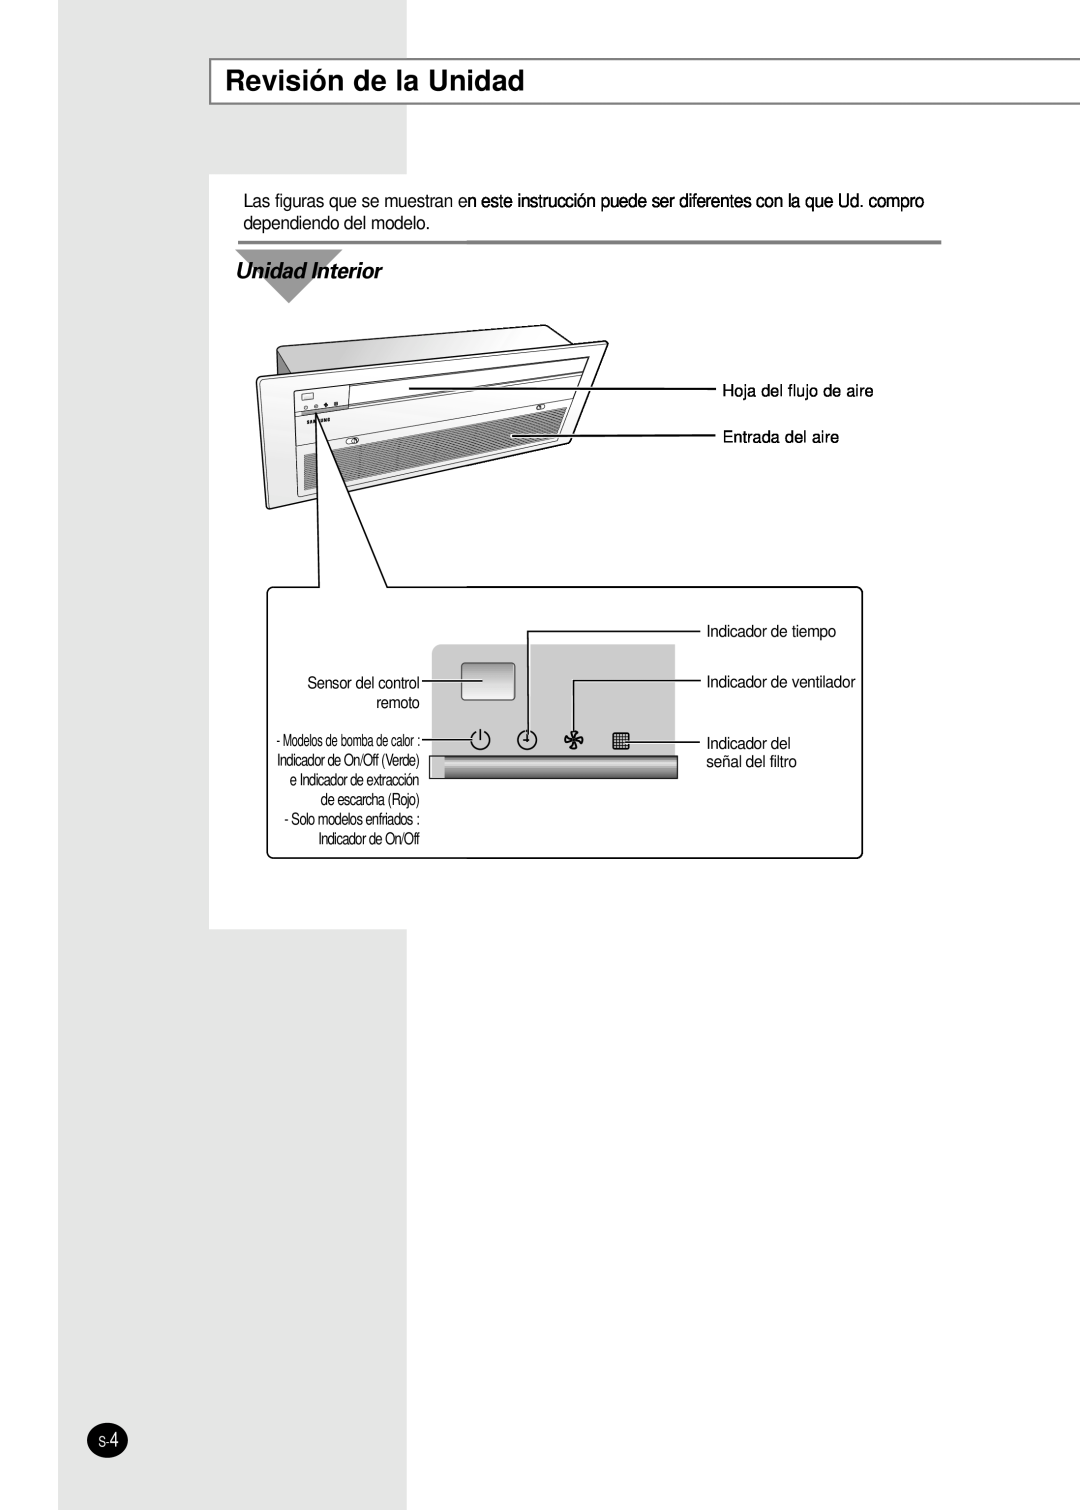 Samsung AVMKC026EA Revisión de la Unidad, Unidad Interior, Indicador de ventilador, Sensor del control, de escarcha Rojo 